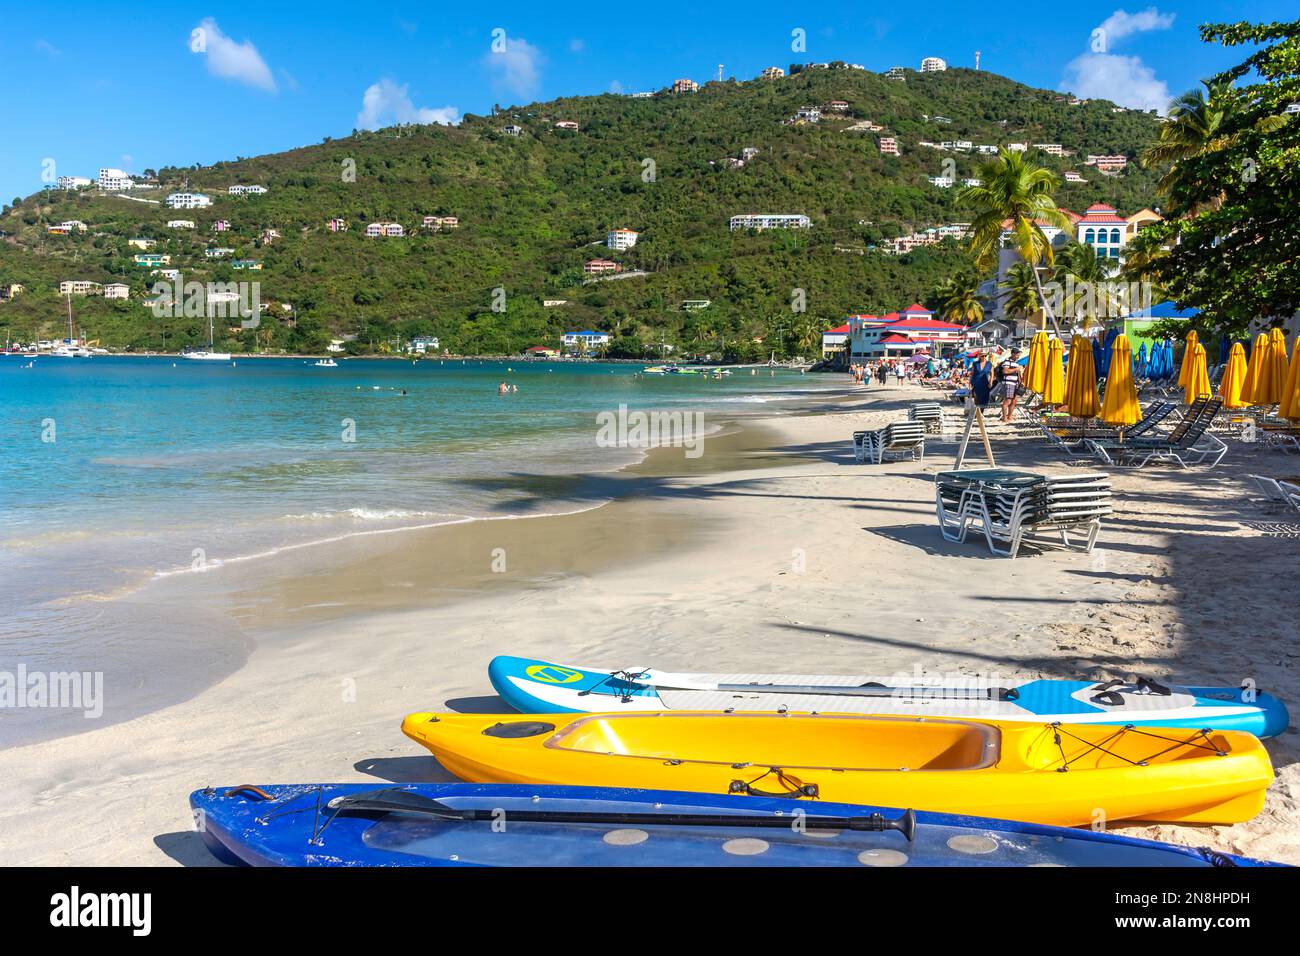 Vue sur la station balnéaire, Cane Garden Bay, Tortola, les îles Vierges britanniques (BVI), les Petites Antilles, les Caraïbes Banque D'Images